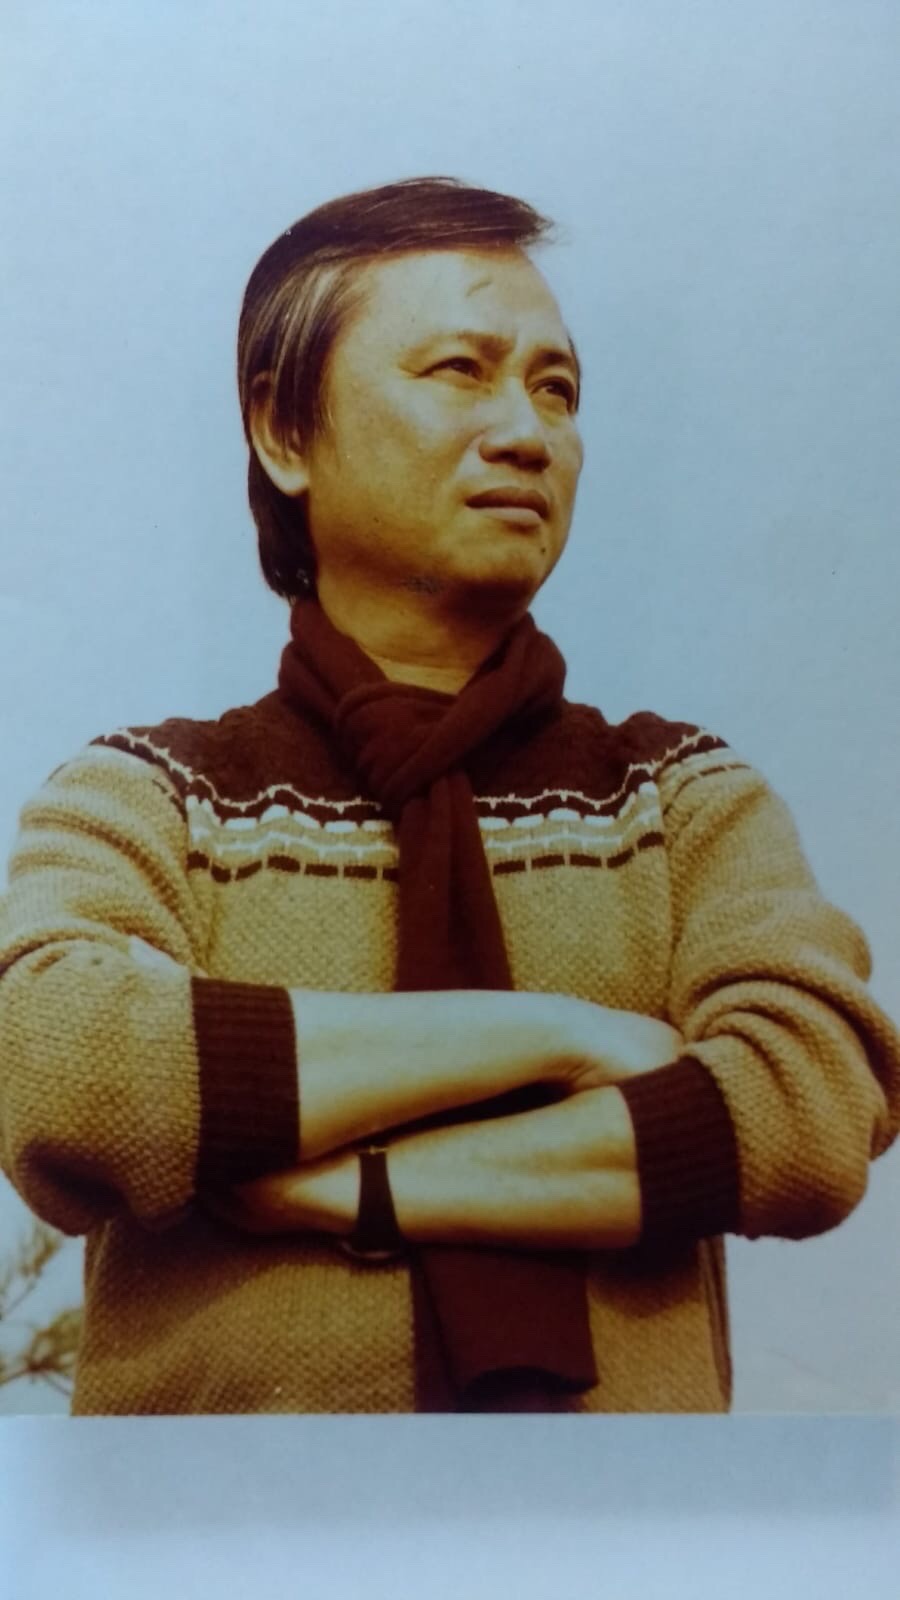 Nhạc sĩ Lam Phương sẽ được chôn cất trên đất Mẹ - Ảnh 2.